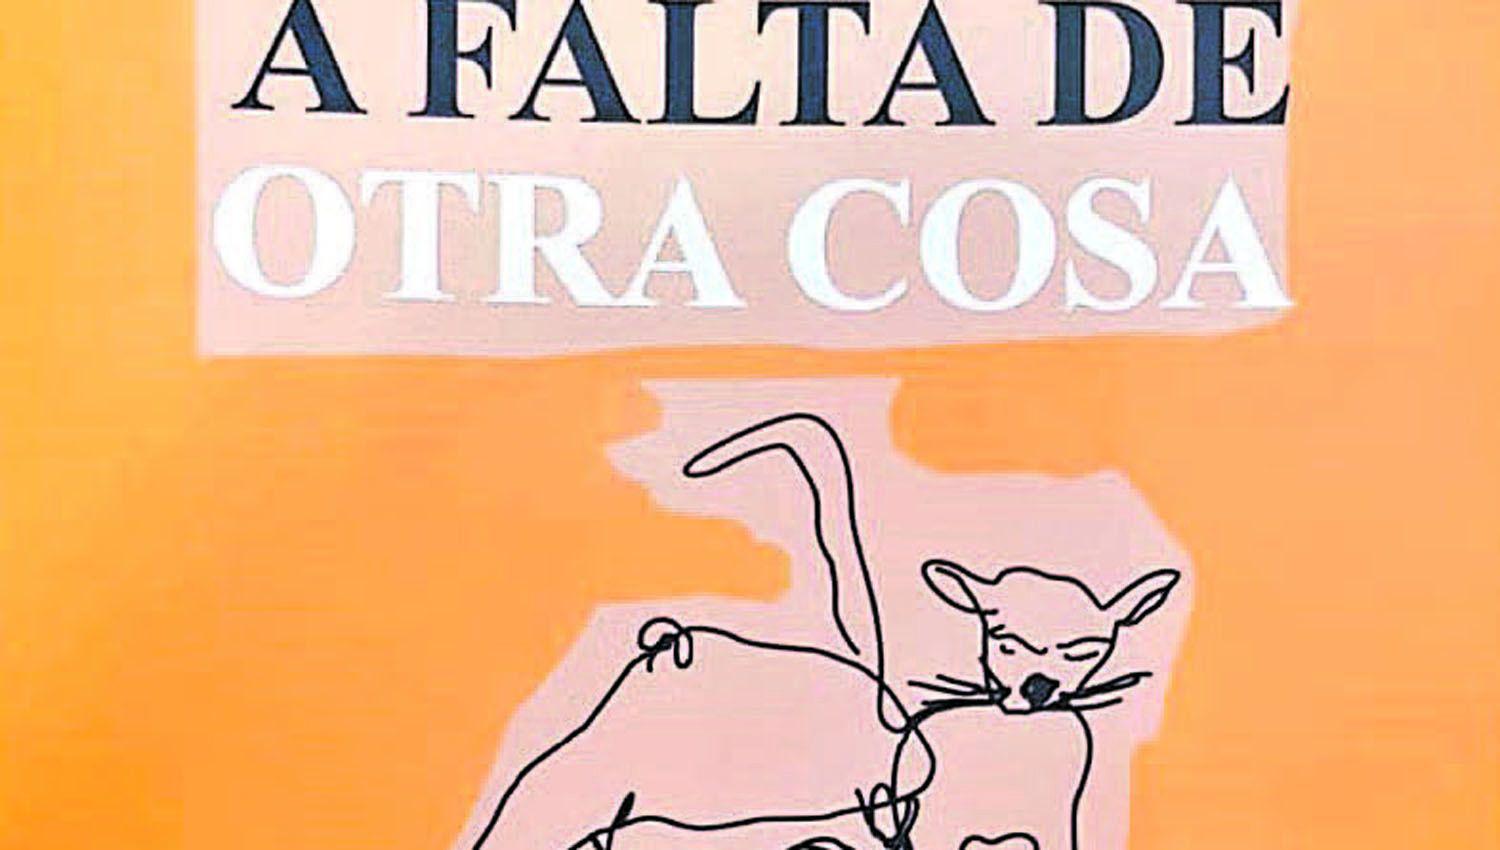 ldquoA FALTA DE OTRA COSArdquo poesiacutea de Carlos Virgilio Zurita